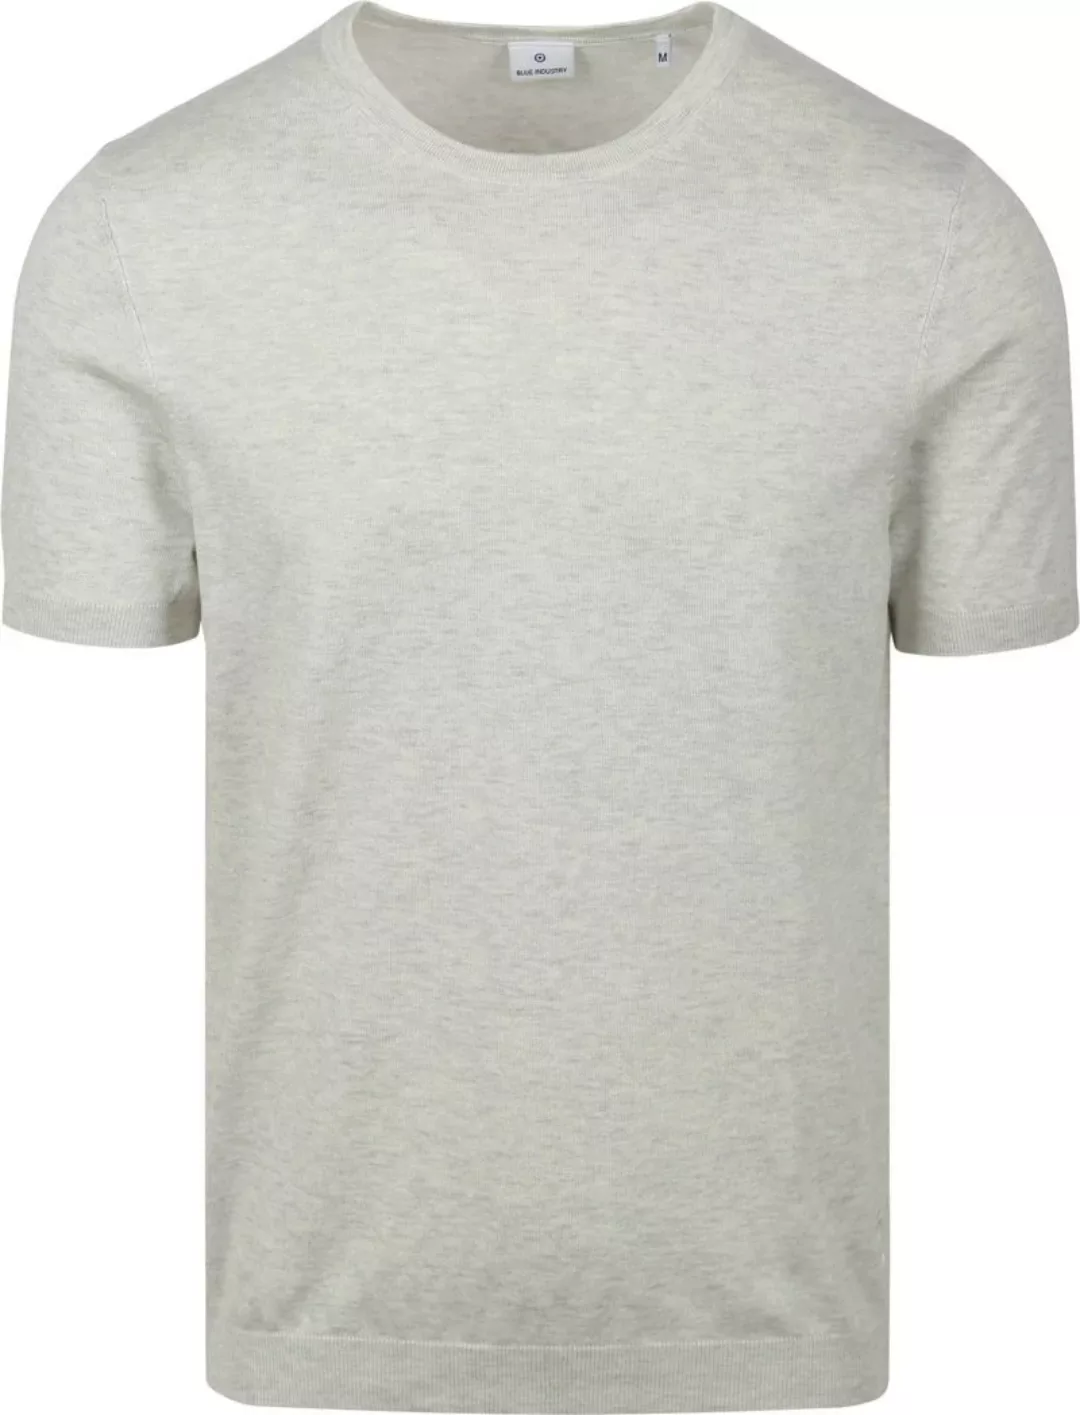 Blue Industry Knitted T-Shirt Melange Ecru - Größe XL günstig online kaufen